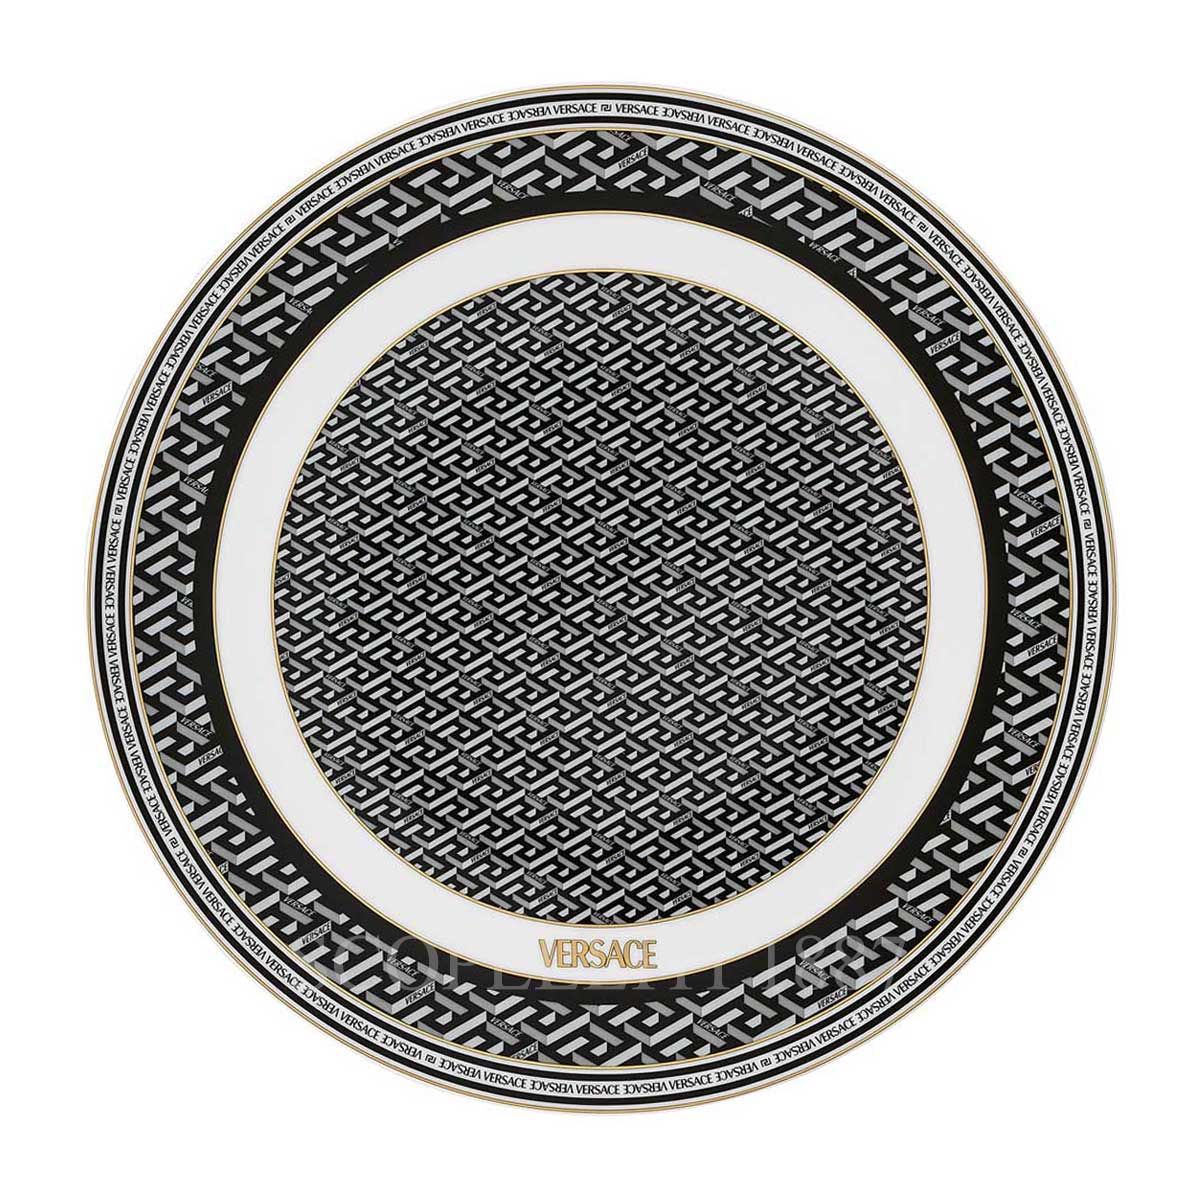 Versace Service Plate La Greca Signature Black | Versace Plate